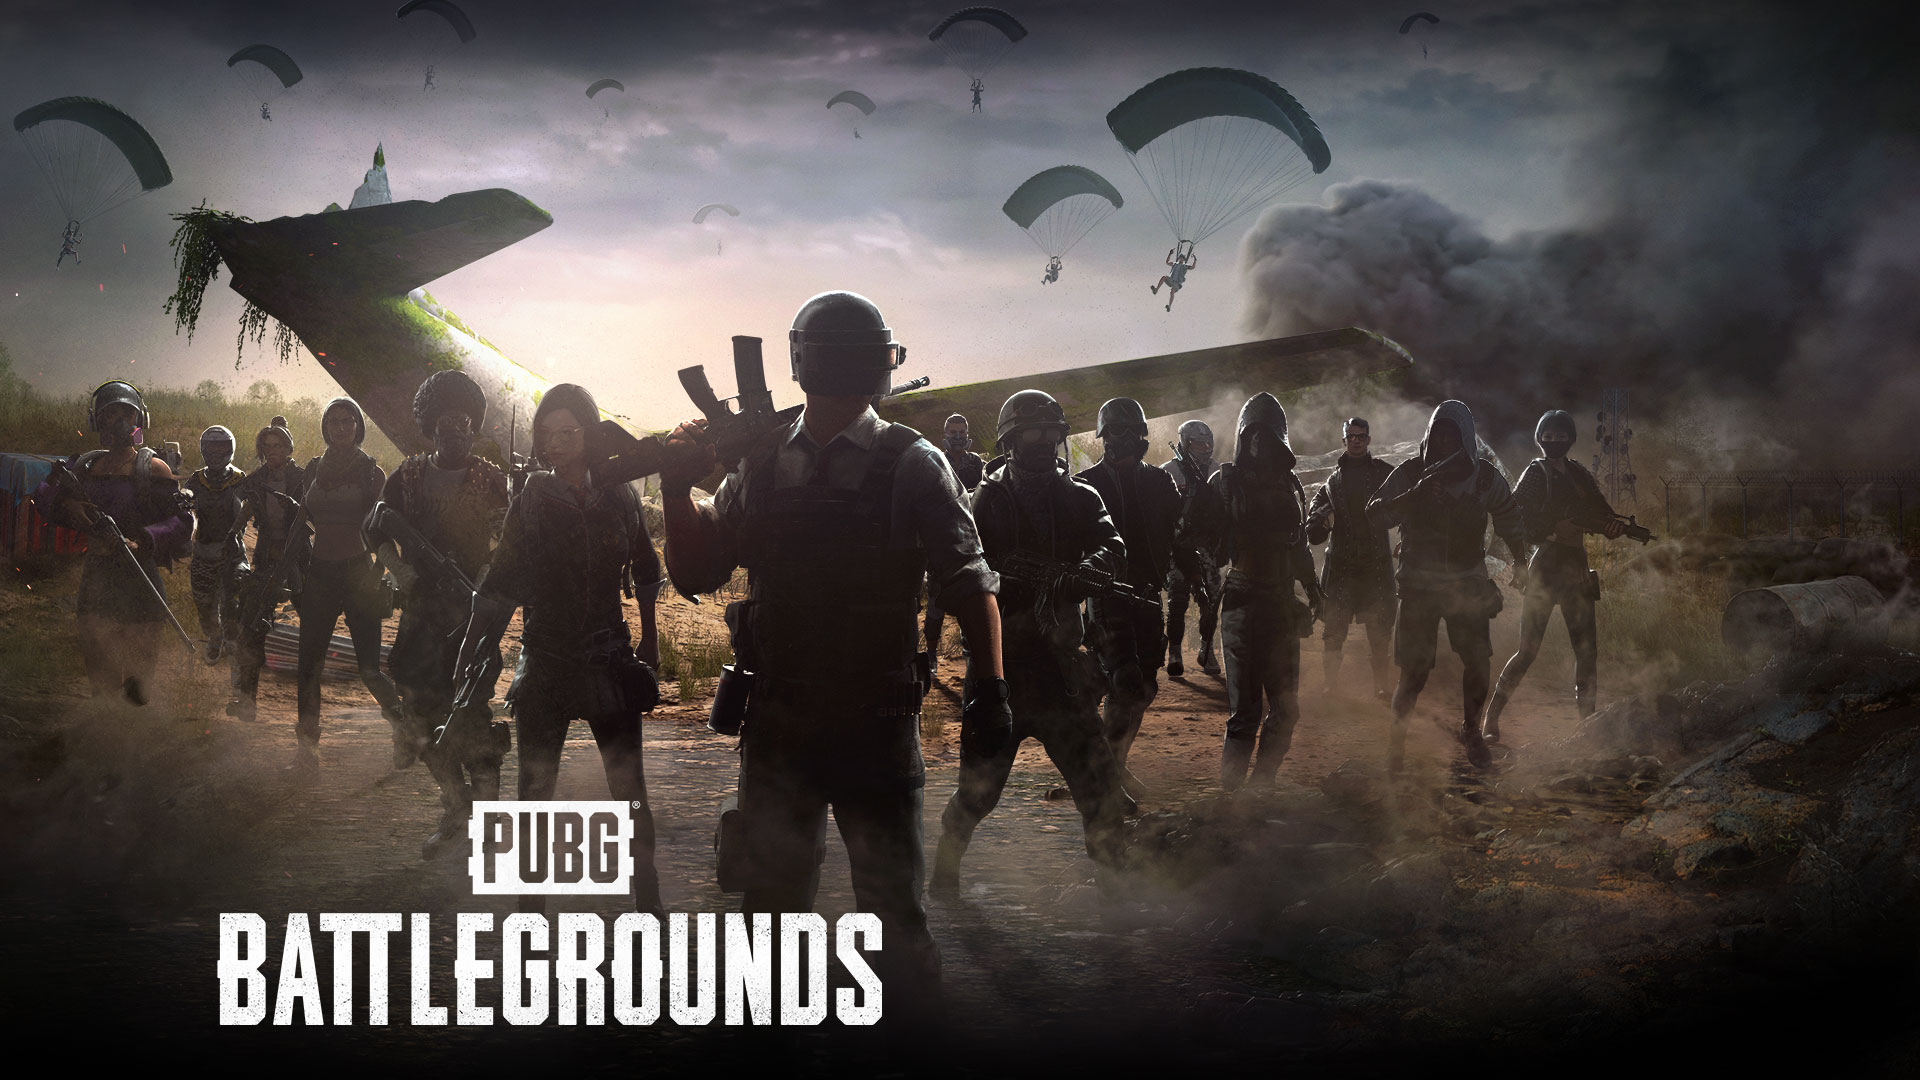 PUBG: Battlegrounds. Eine Gruppe von Spieler*innen versammelt sich um ein abgestürztes Flugzeug, während andere mit Fallschirmen landen.